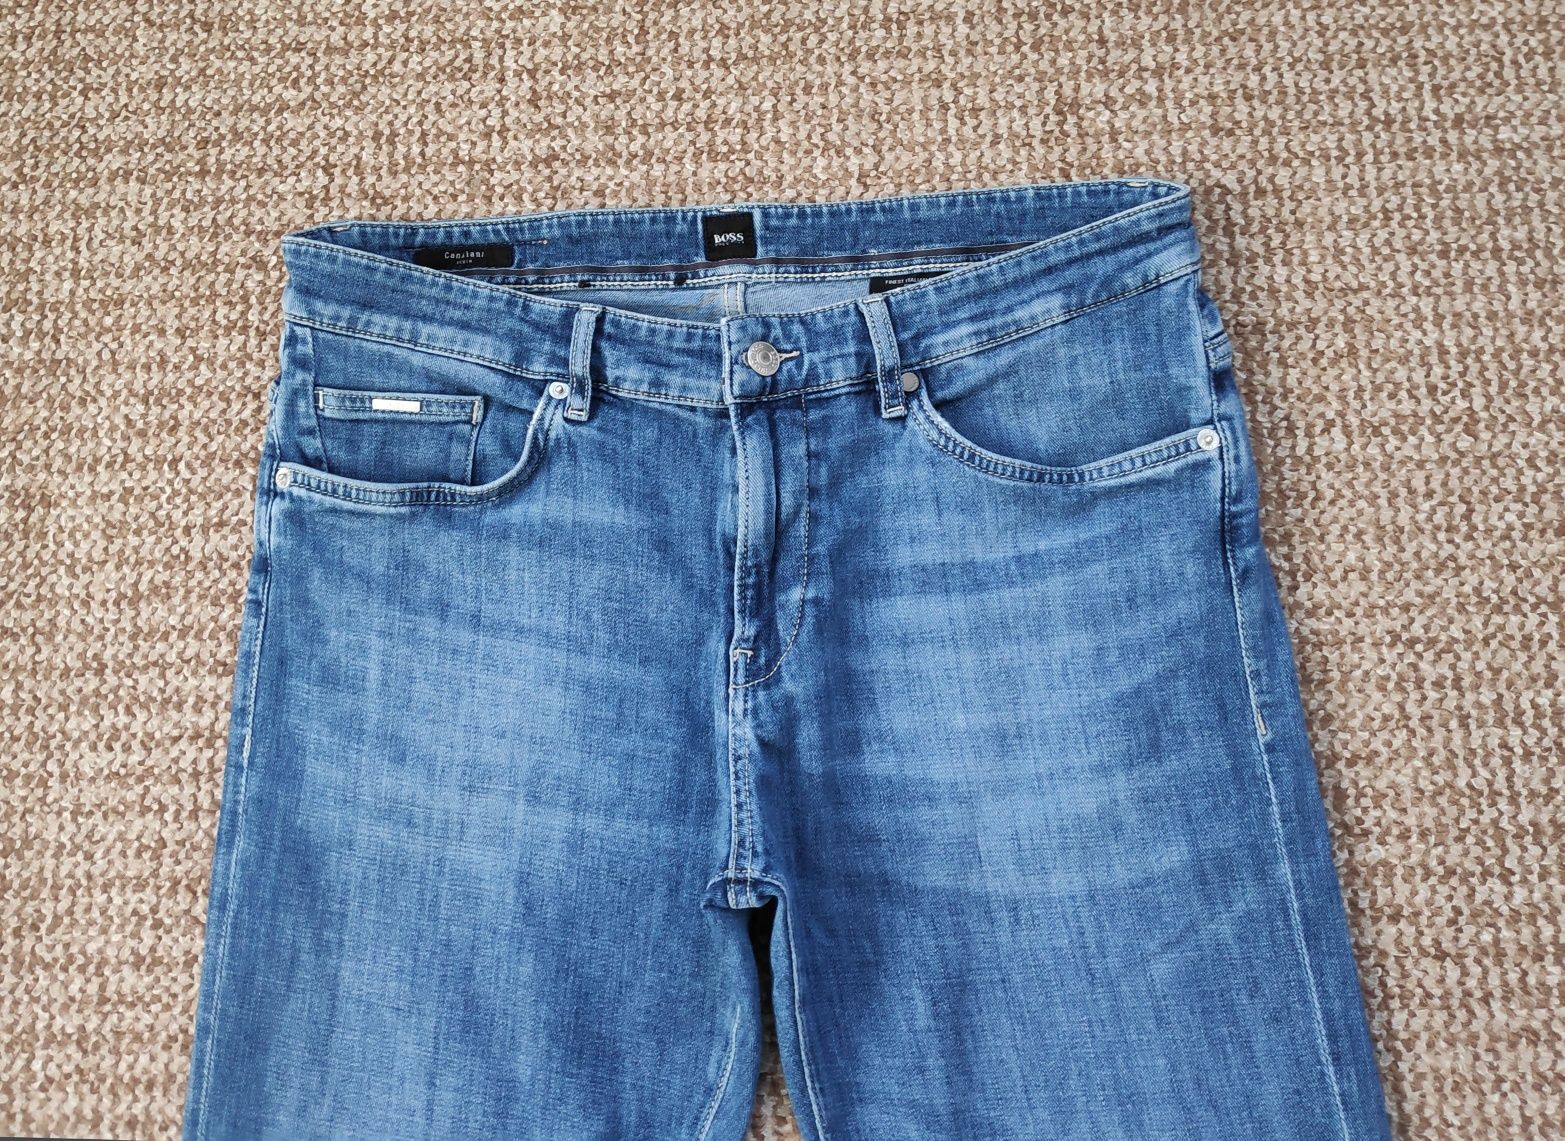 Hugo Boss летние джинсы Candiani slim fit оригинал W34 L30